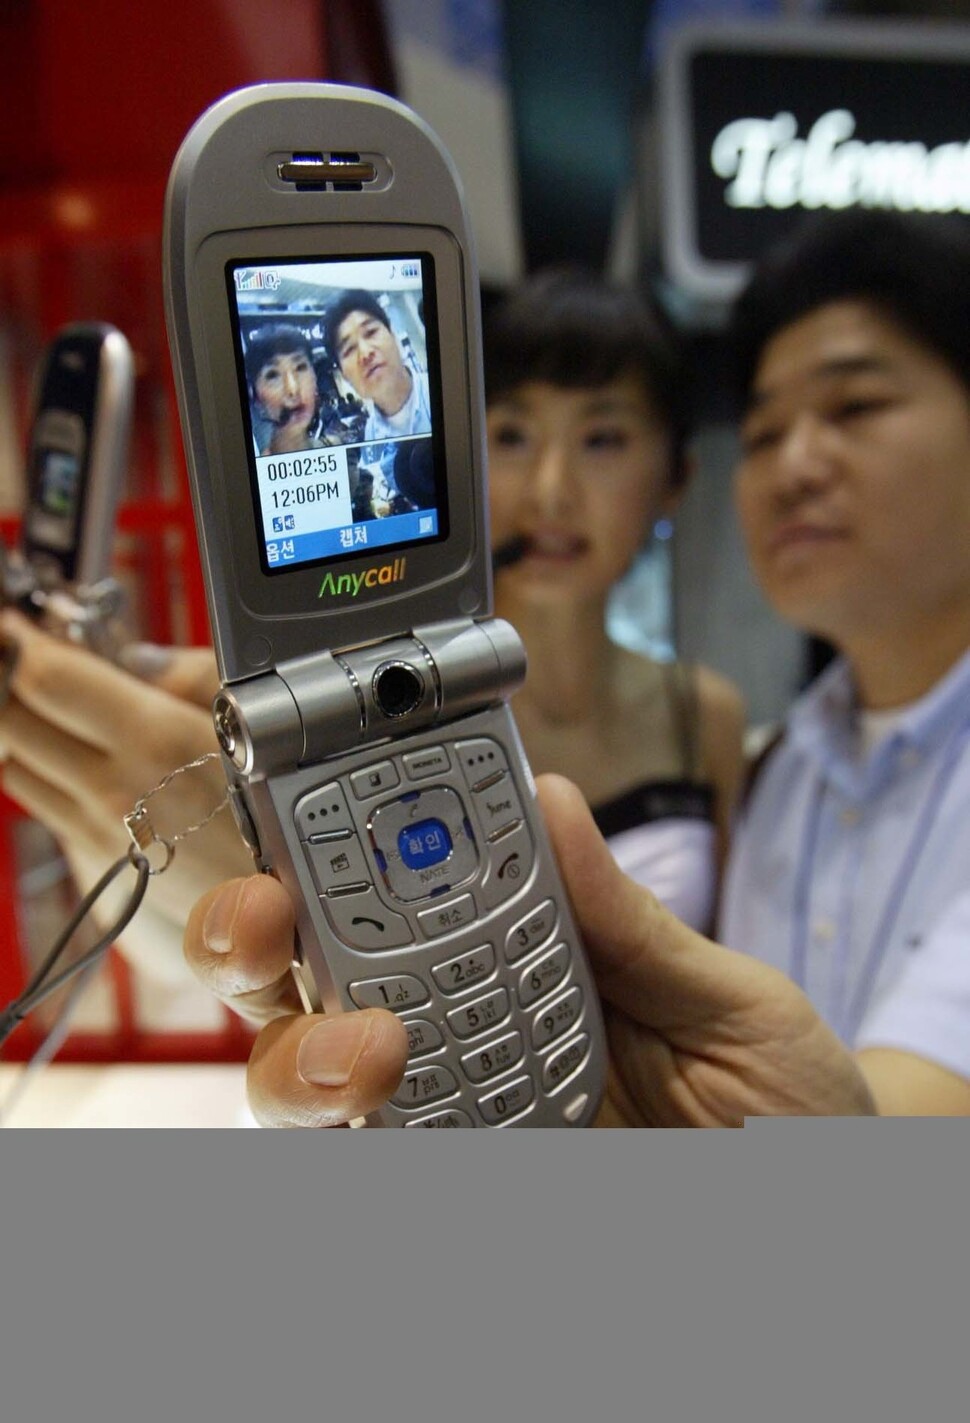 2005년 열린 국제 정보통신 및 이동통신 전시회에서 애니콜 전화기를 이용해 3G 화상통화를 시연하는 모습. 휴대폰에 달린 카메라는 원래 화상통신을 위해 장착된 부품이기에, 3G 핵심 서비스가 되리라 다들 생각했지만, 한국에선 널리 쓰이지 못했다. 2020년이 되기 전에는. 이종근 기자 촬영.